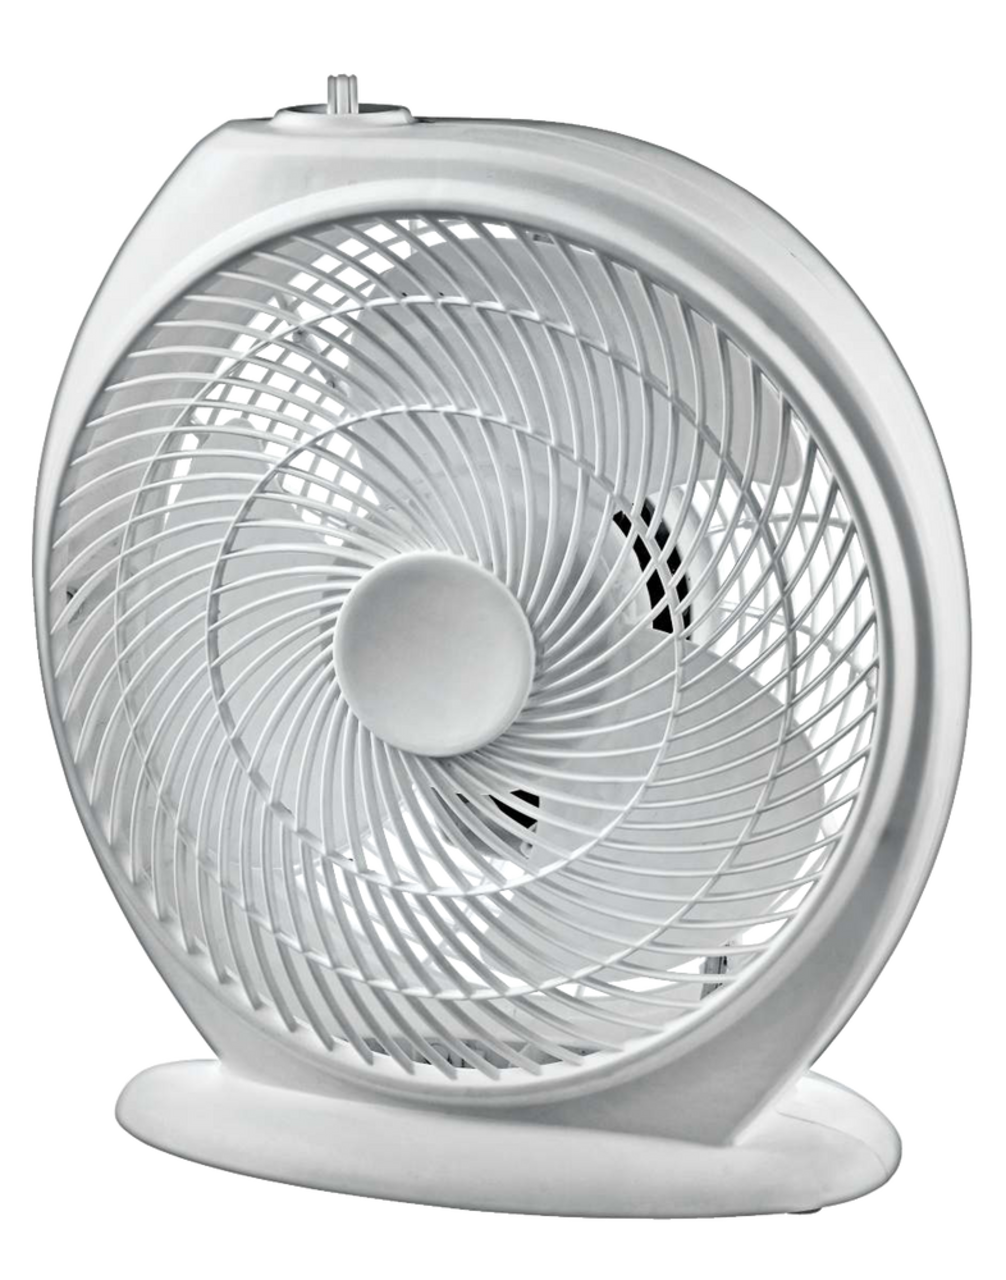 Radiateur ventilateur portatif For Living, 1500 W, blanc